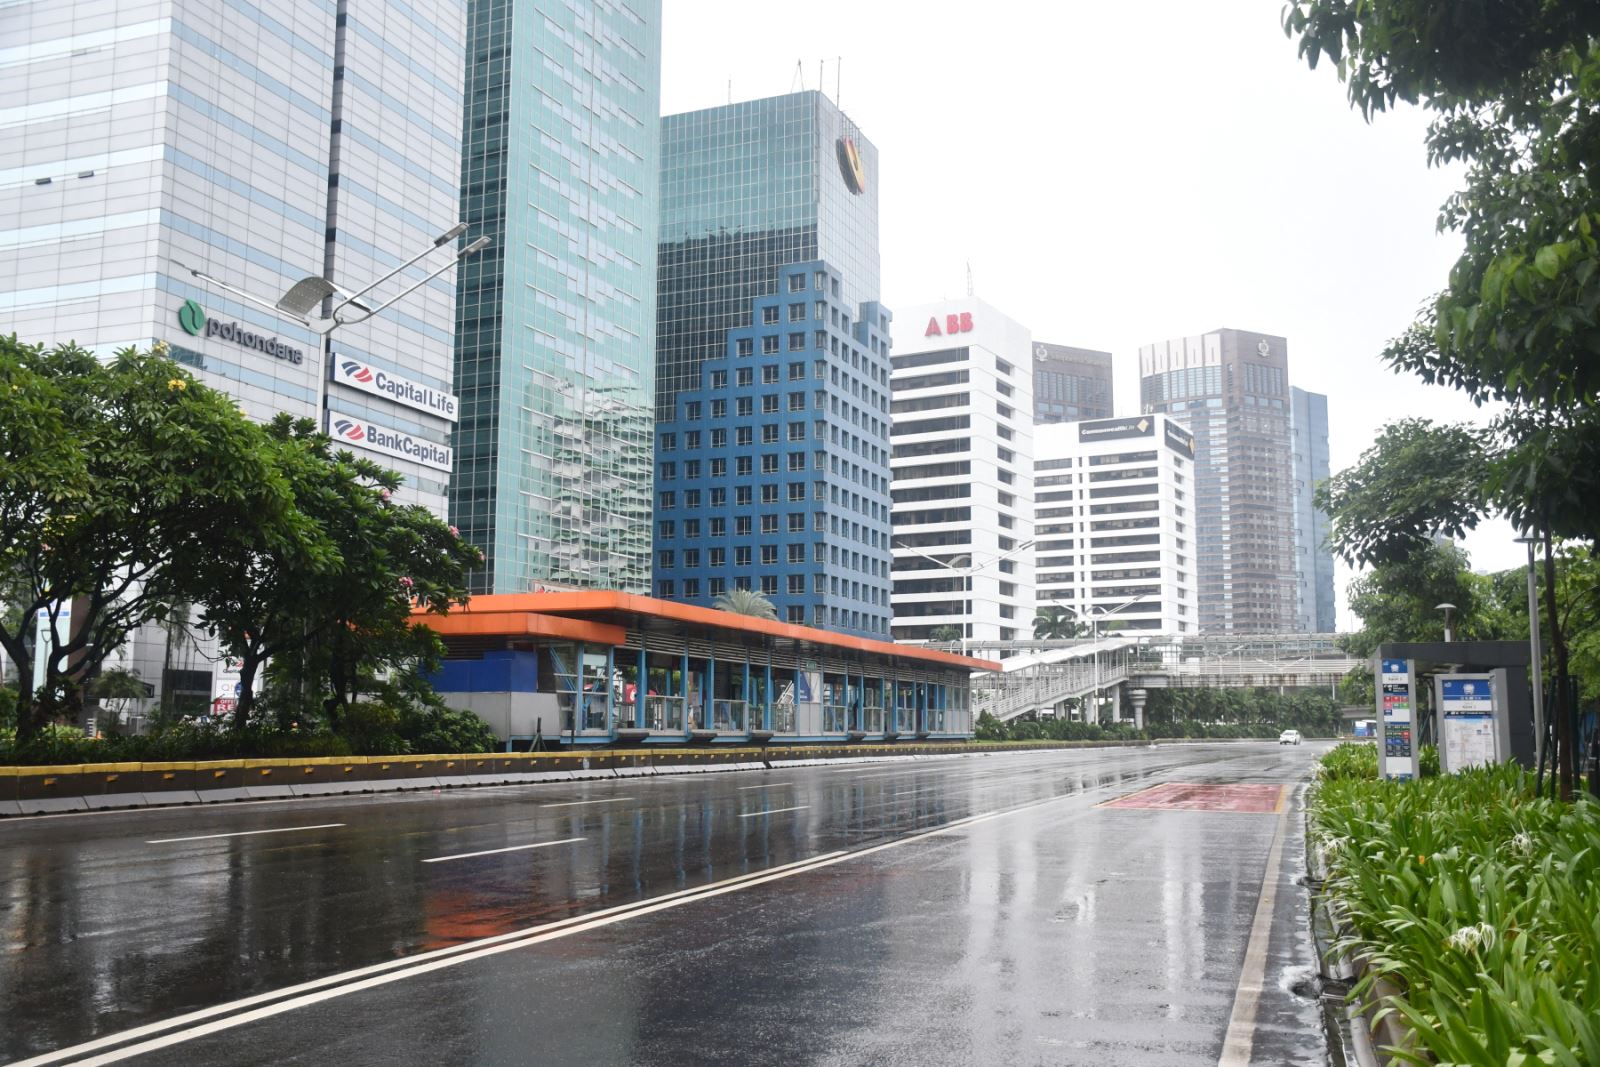 Thủ đô Jakarta vốn nổi tiếng với “đặc sản tắc đường” nay vắng vẻ trong những ngày ban bố tình trạng khẩn cấp. (Ảnh: Hương Trà/VOV Jakarta).